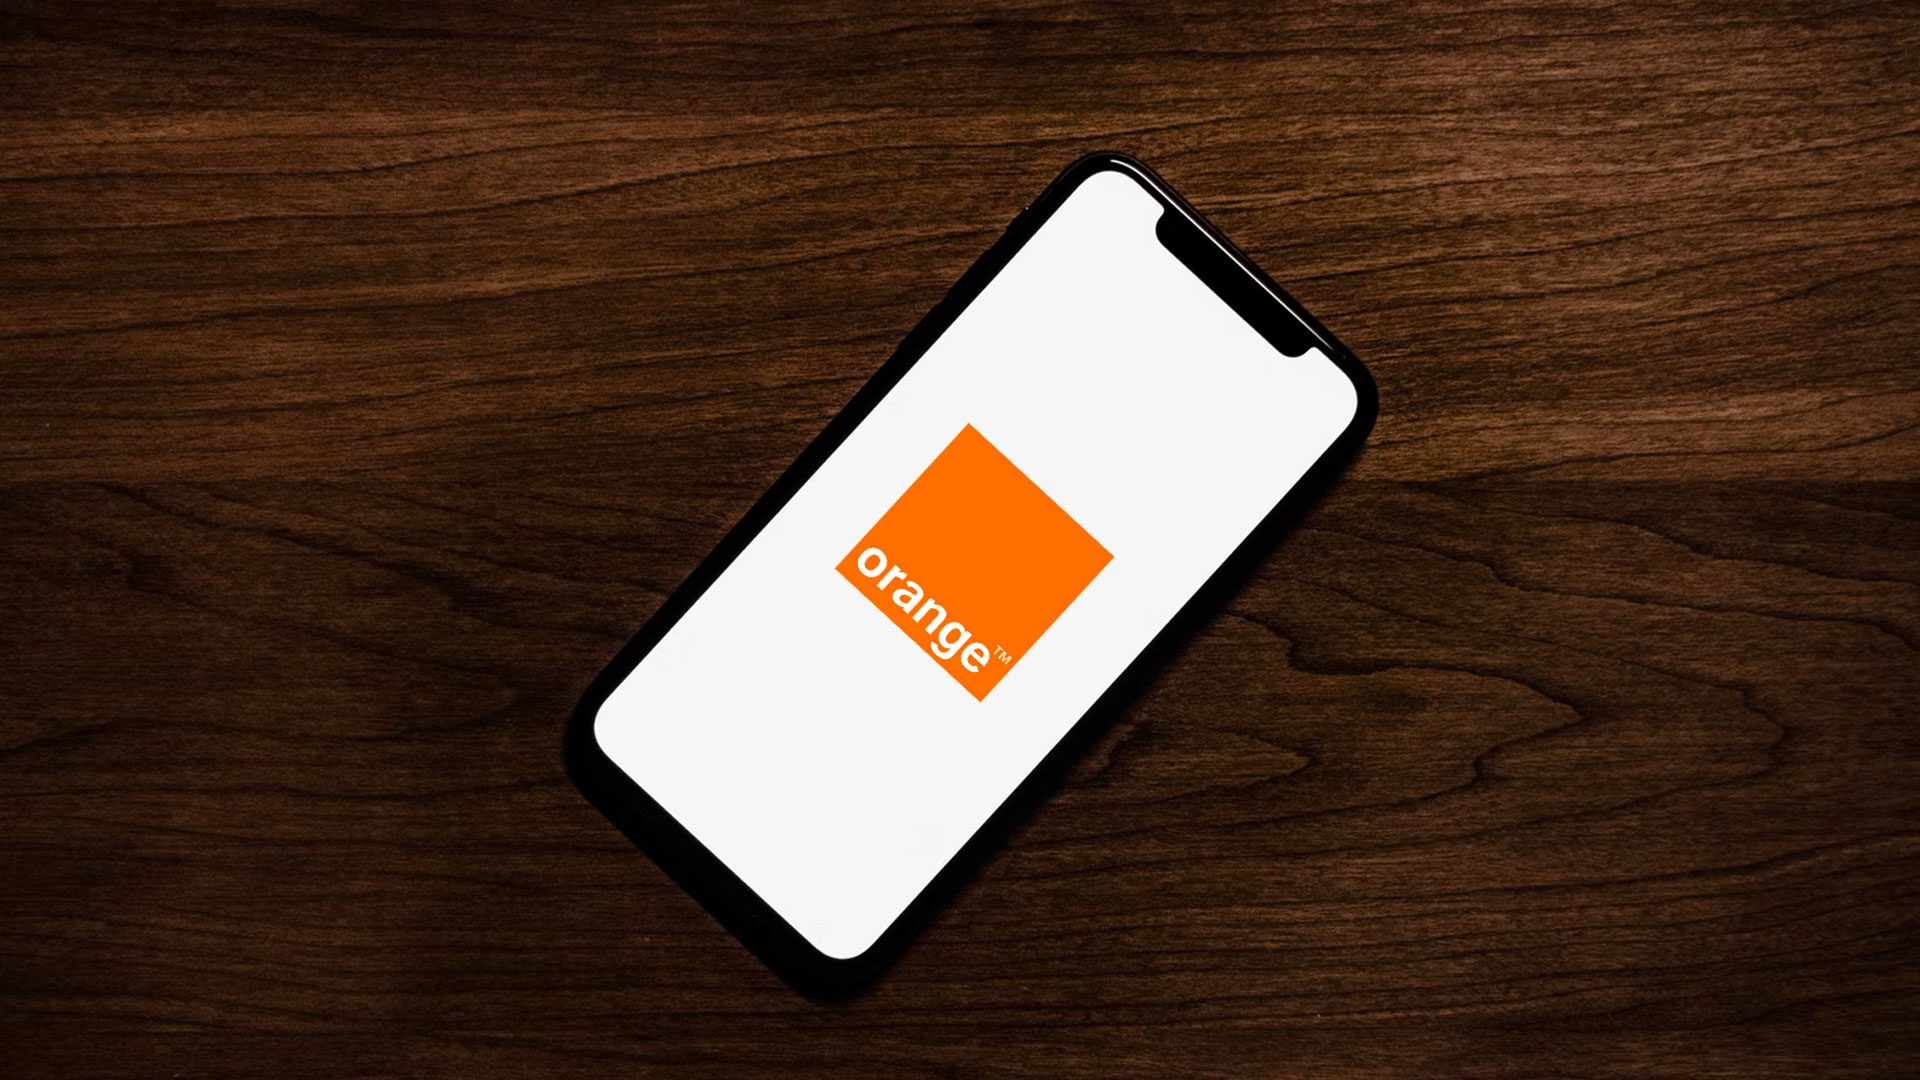 Orange Slovensko na obrazovke iPhonu, ktorý je položený na drevenom stole